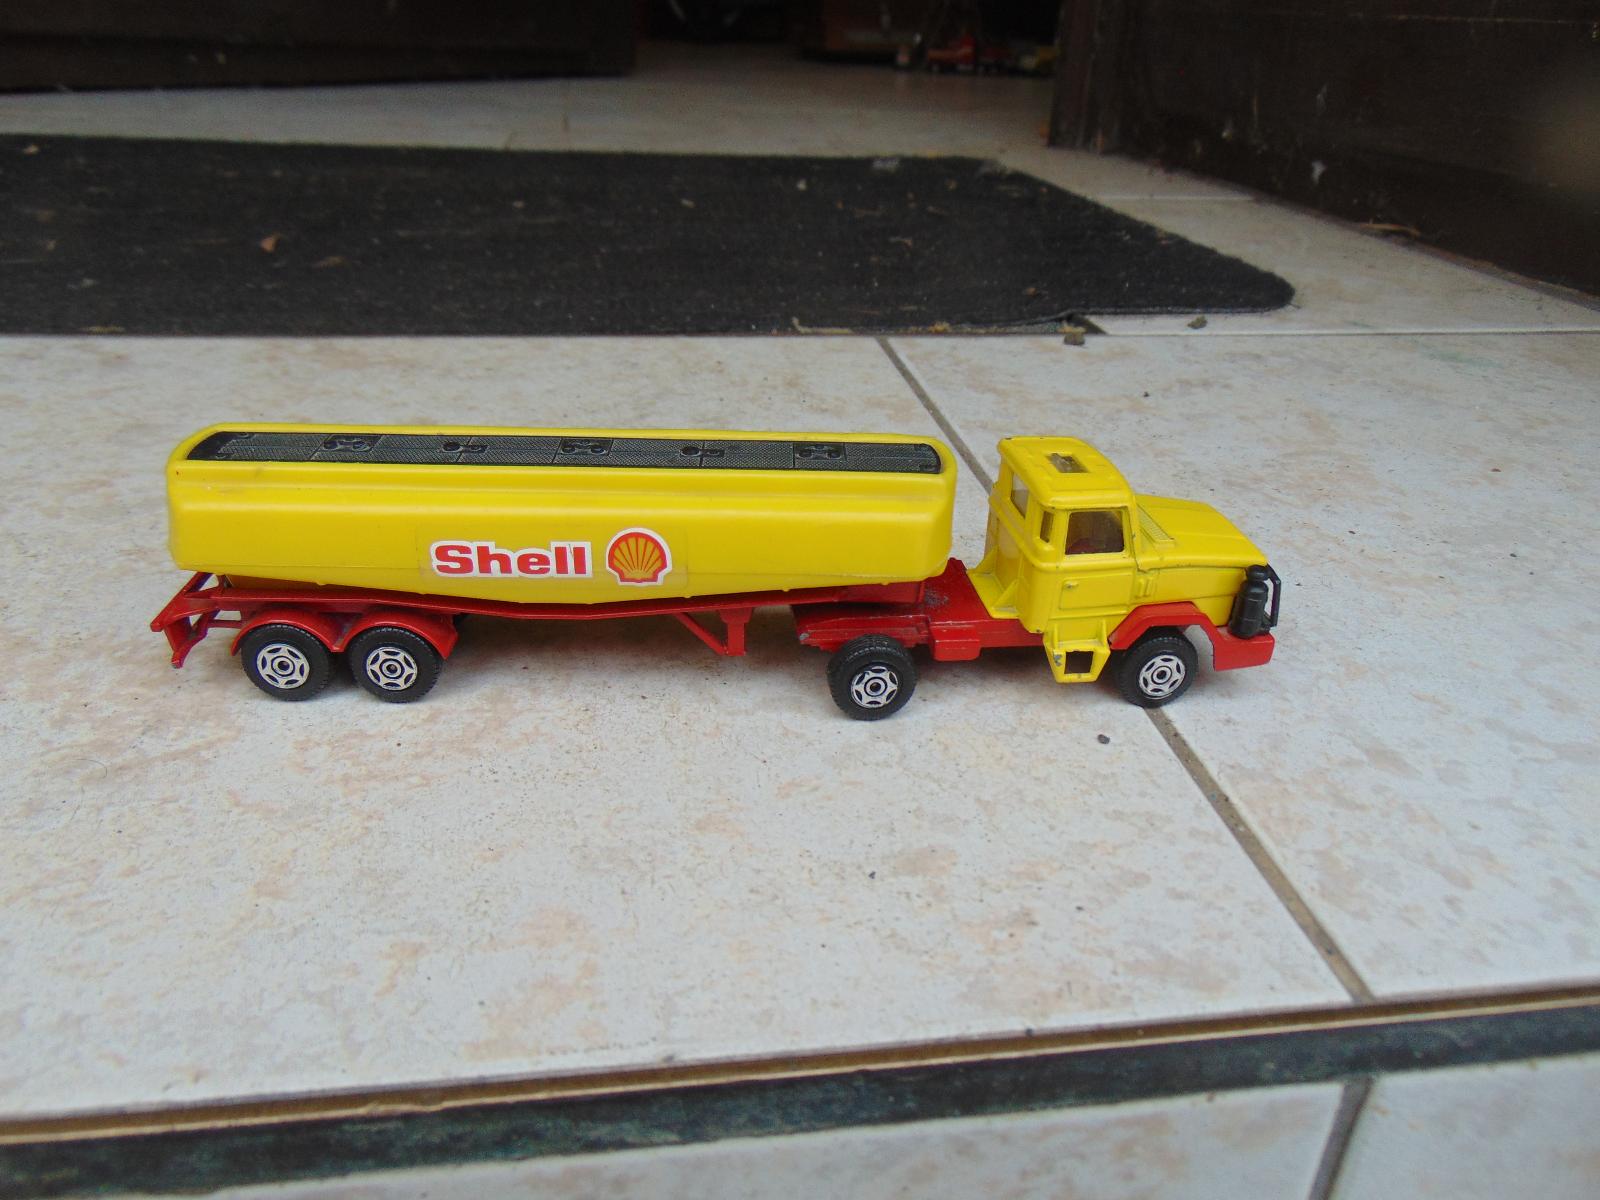 Kamion s cisternou Shell výrobce Corgi  osobní předání Plzeň - Modely automobilů